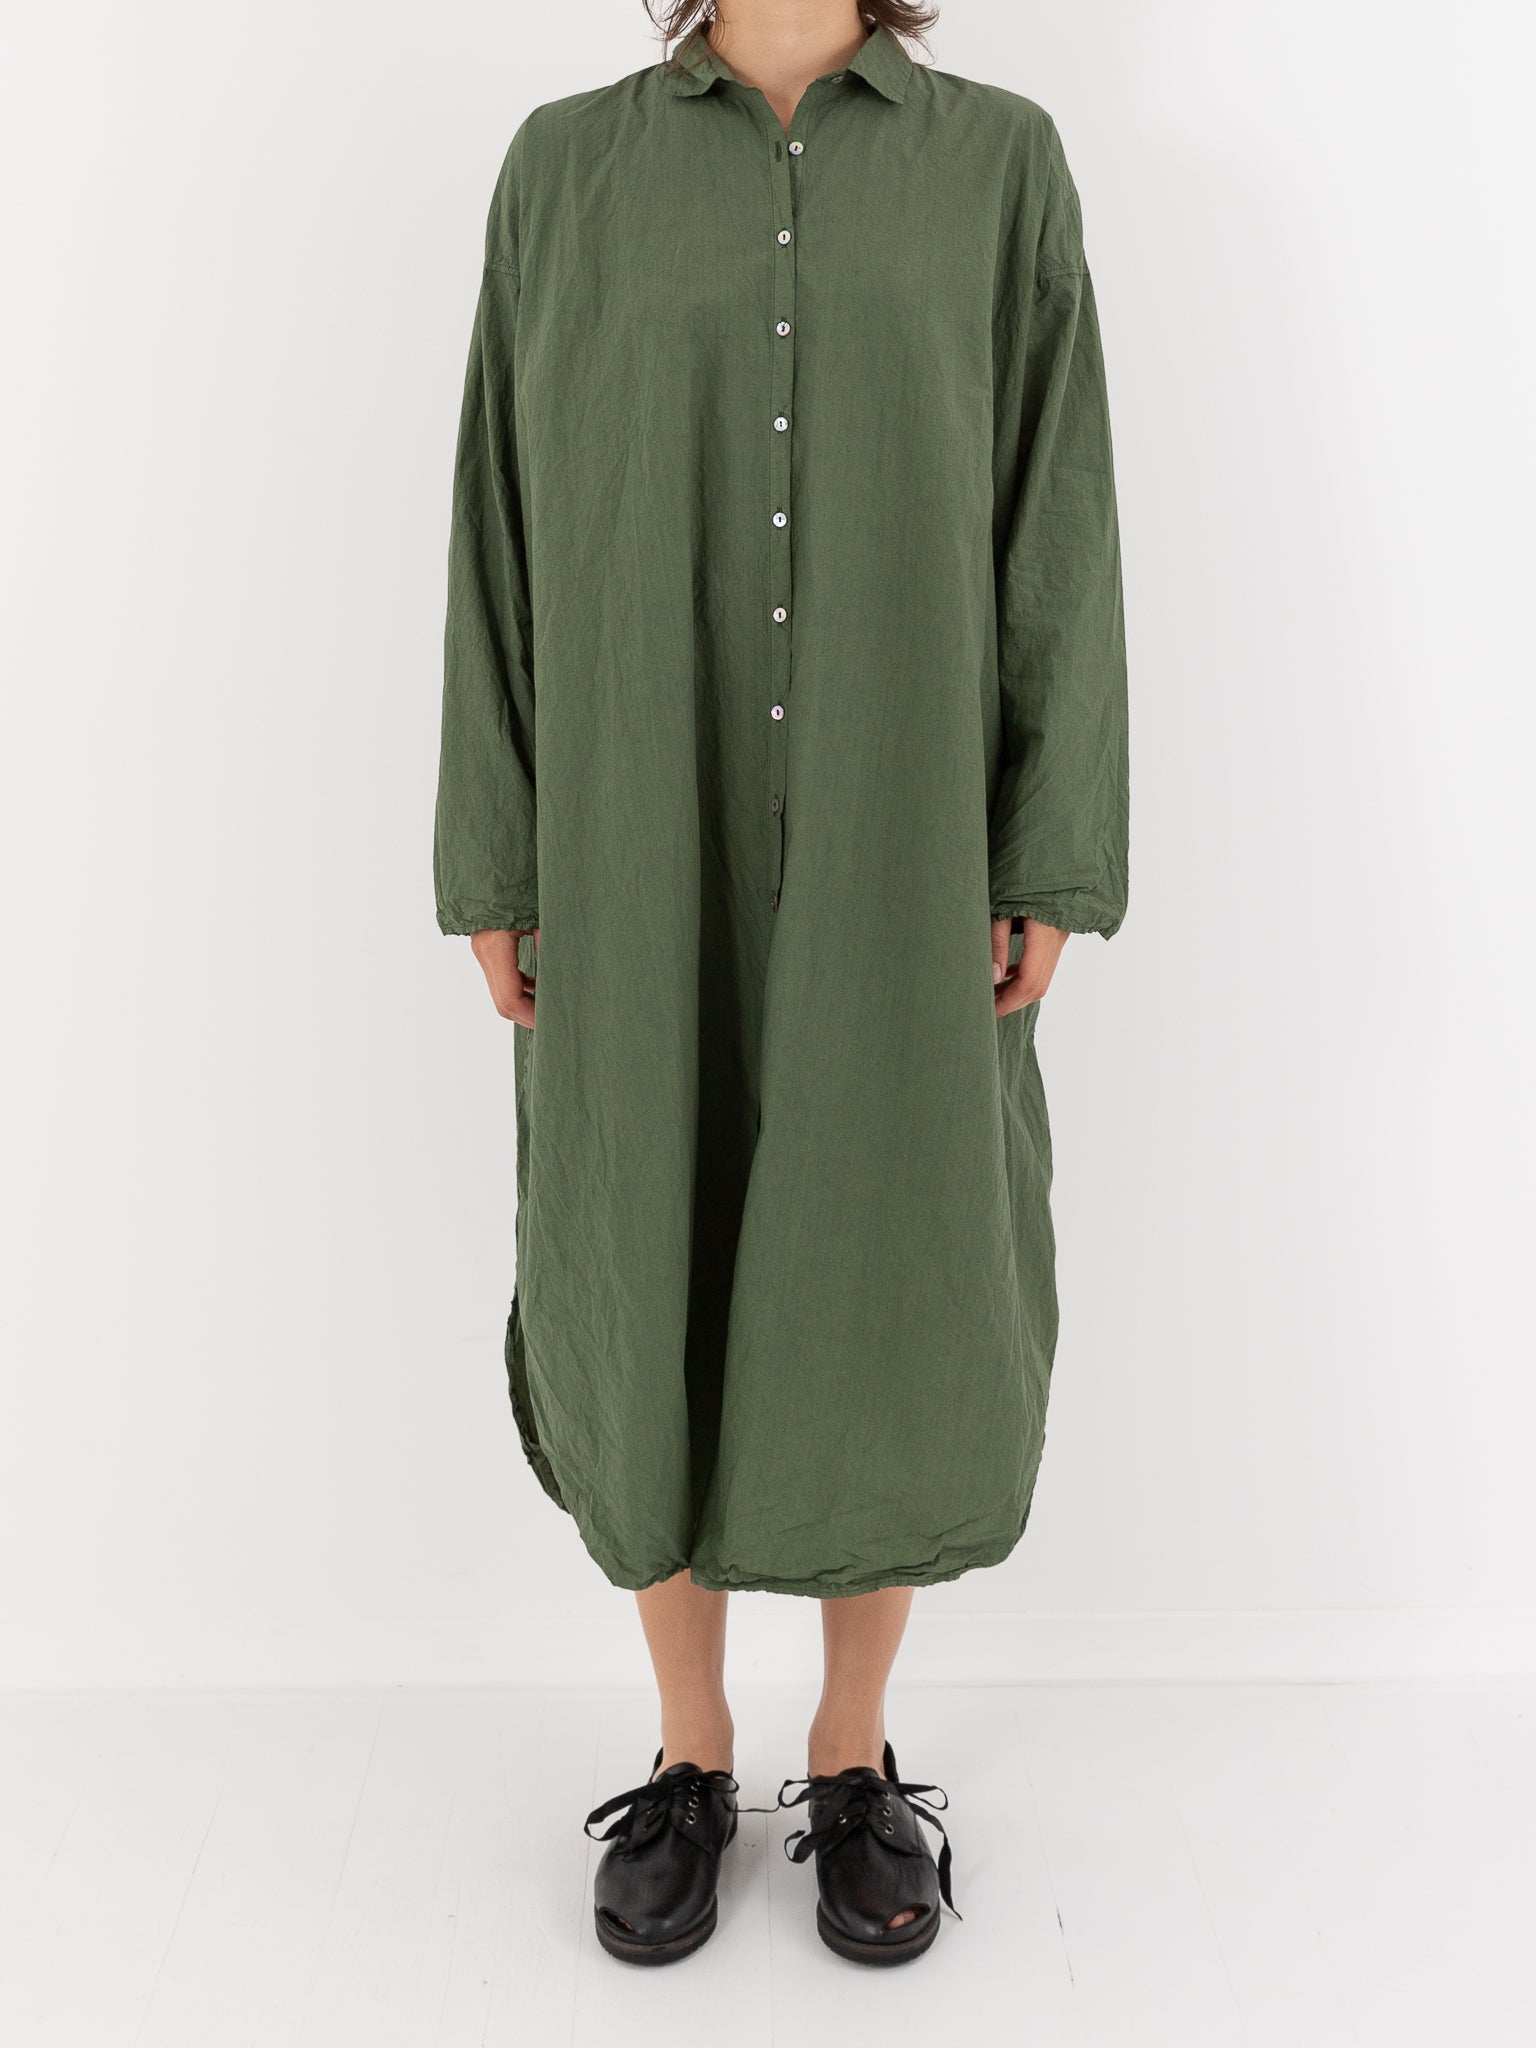 Album Di Famiglia Long Shirt Dress, Green - Worthwhile, Inc.